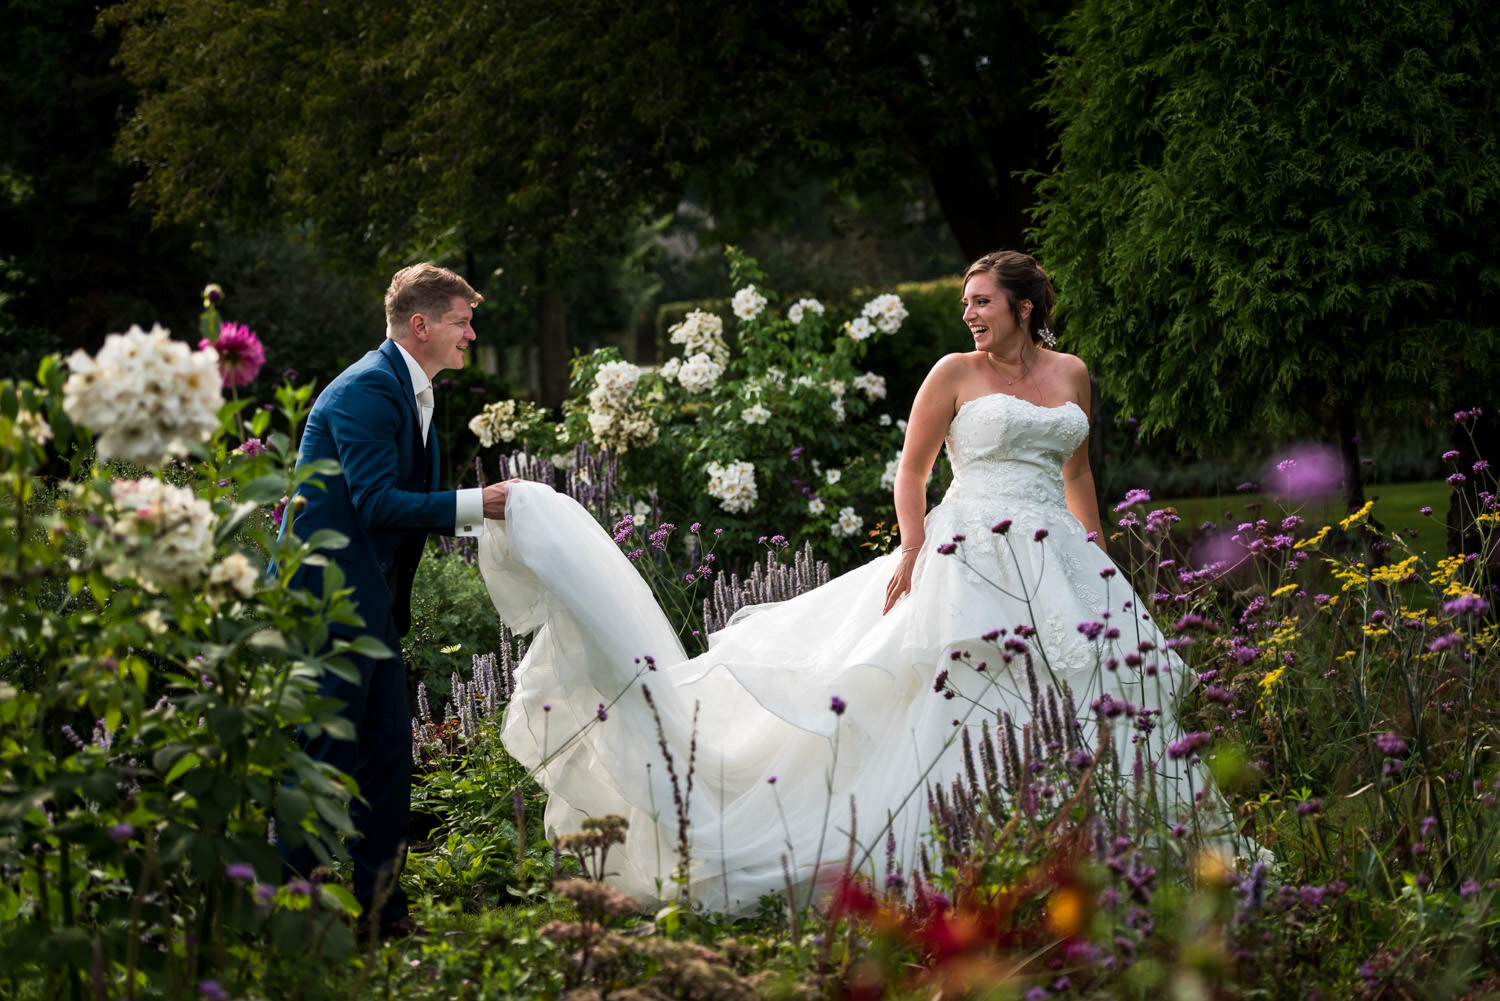 De bruidegom helpt de bruid met het goedleggen van haar trouwjurk. In de omgeving van Breda heb je veel mooie plekjes om gave foto's te maken. Dit kan in de natuur maar ook midden in Breda.